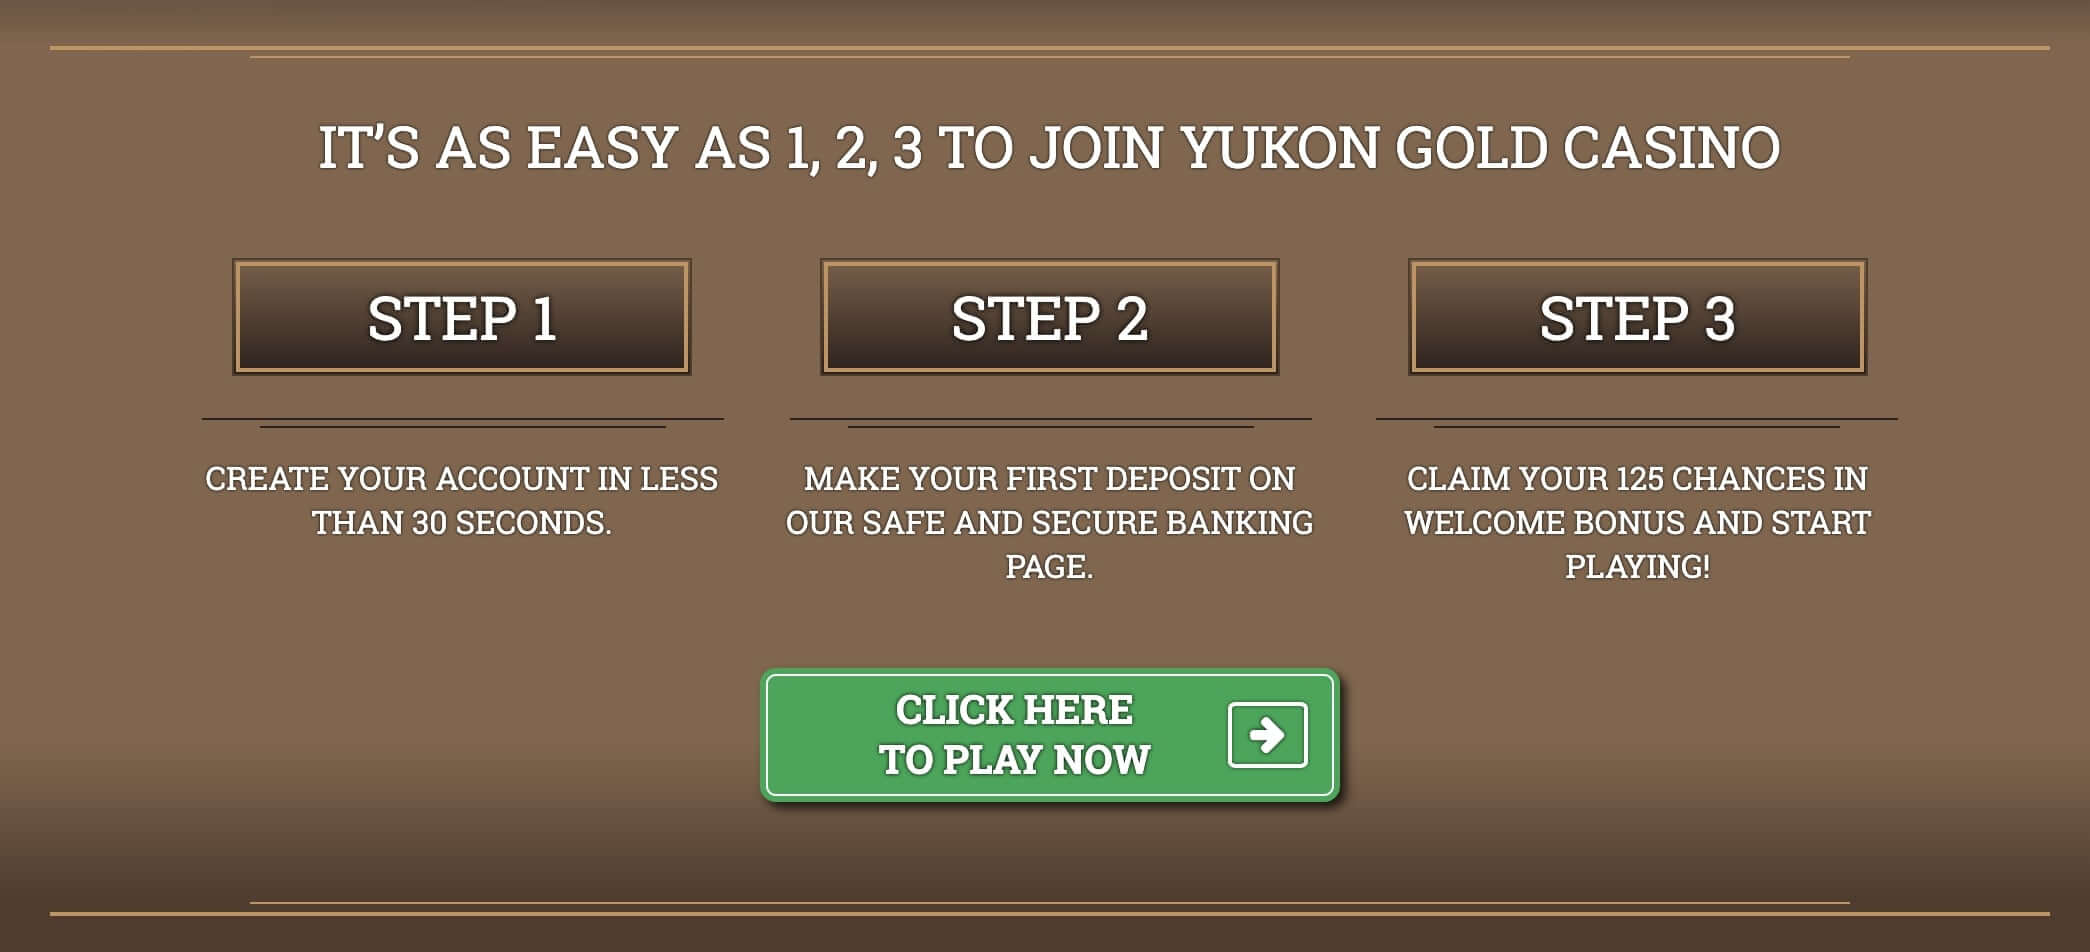 Yukon Gold Casino Sign Up Process